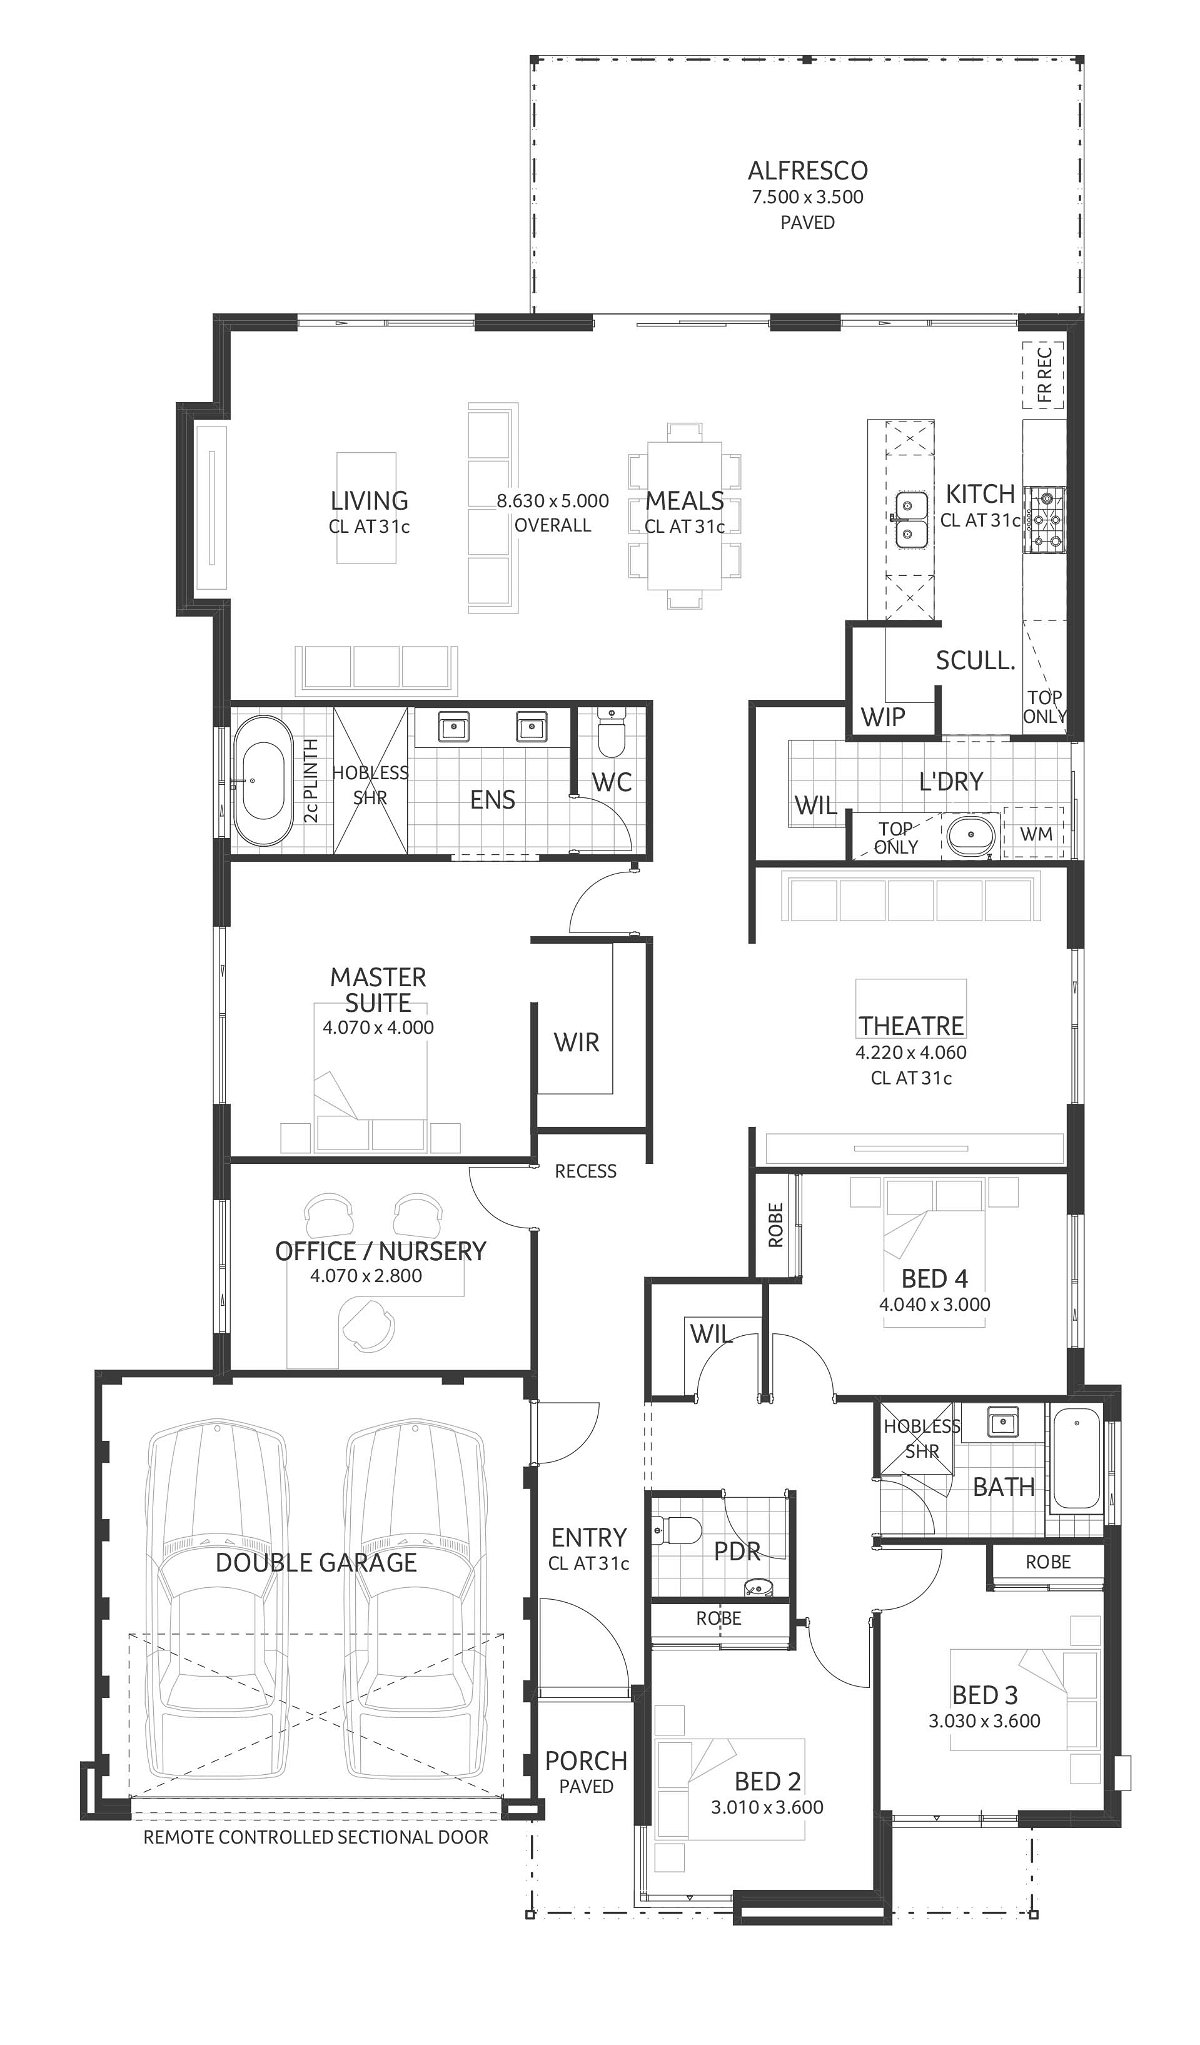 Plunkett Homes - Atomic | Mid-Century - Floorplan - Atomic Luxe Mid Century Marketing Plan A3Jpg